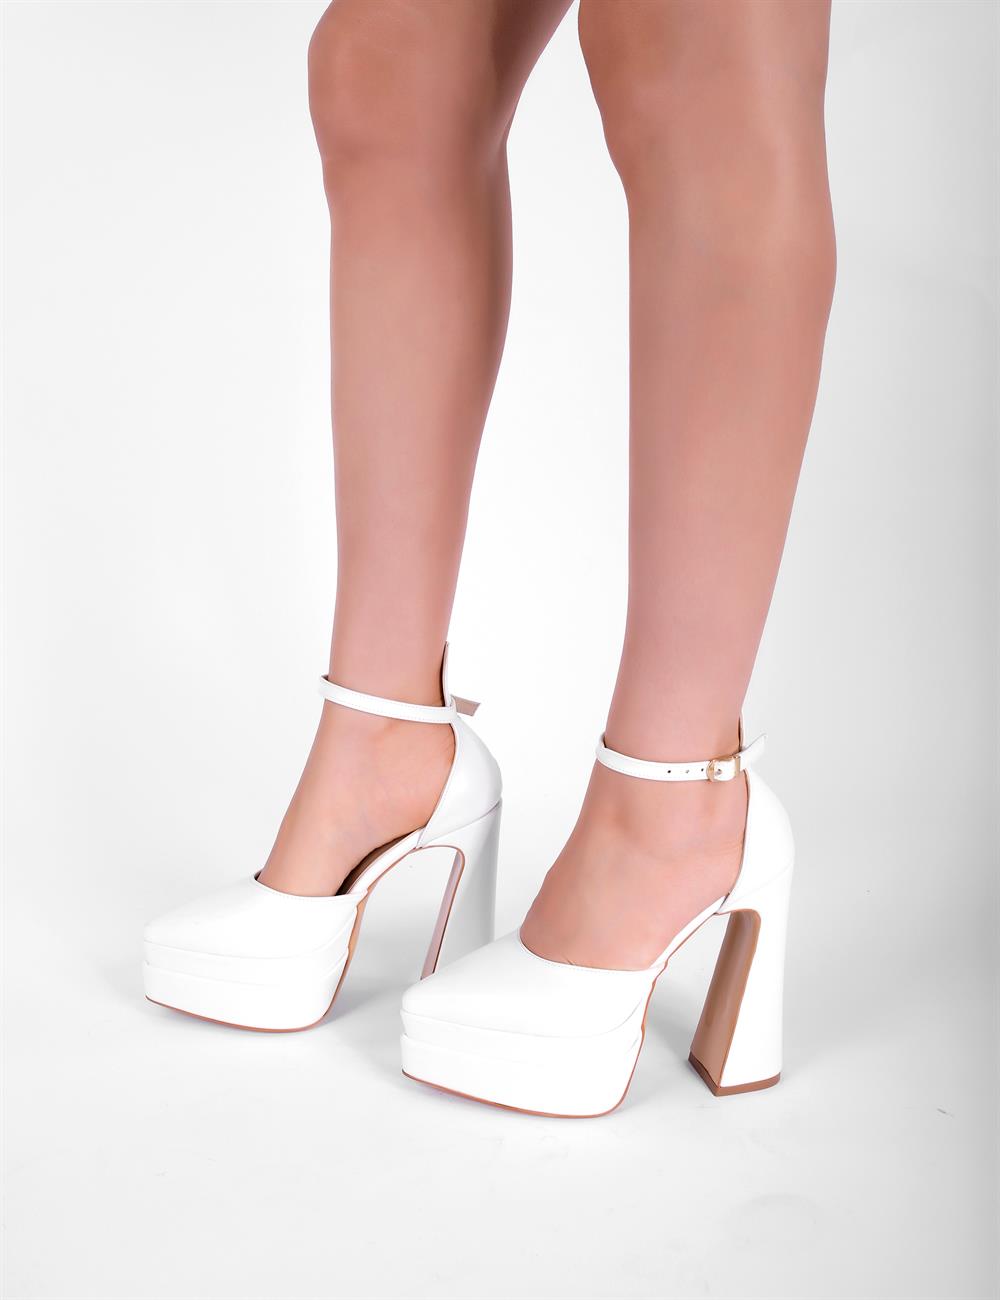 Glamis Kadın Topuklu Ayakkabı Beyaz - Kadın Ayakkabı